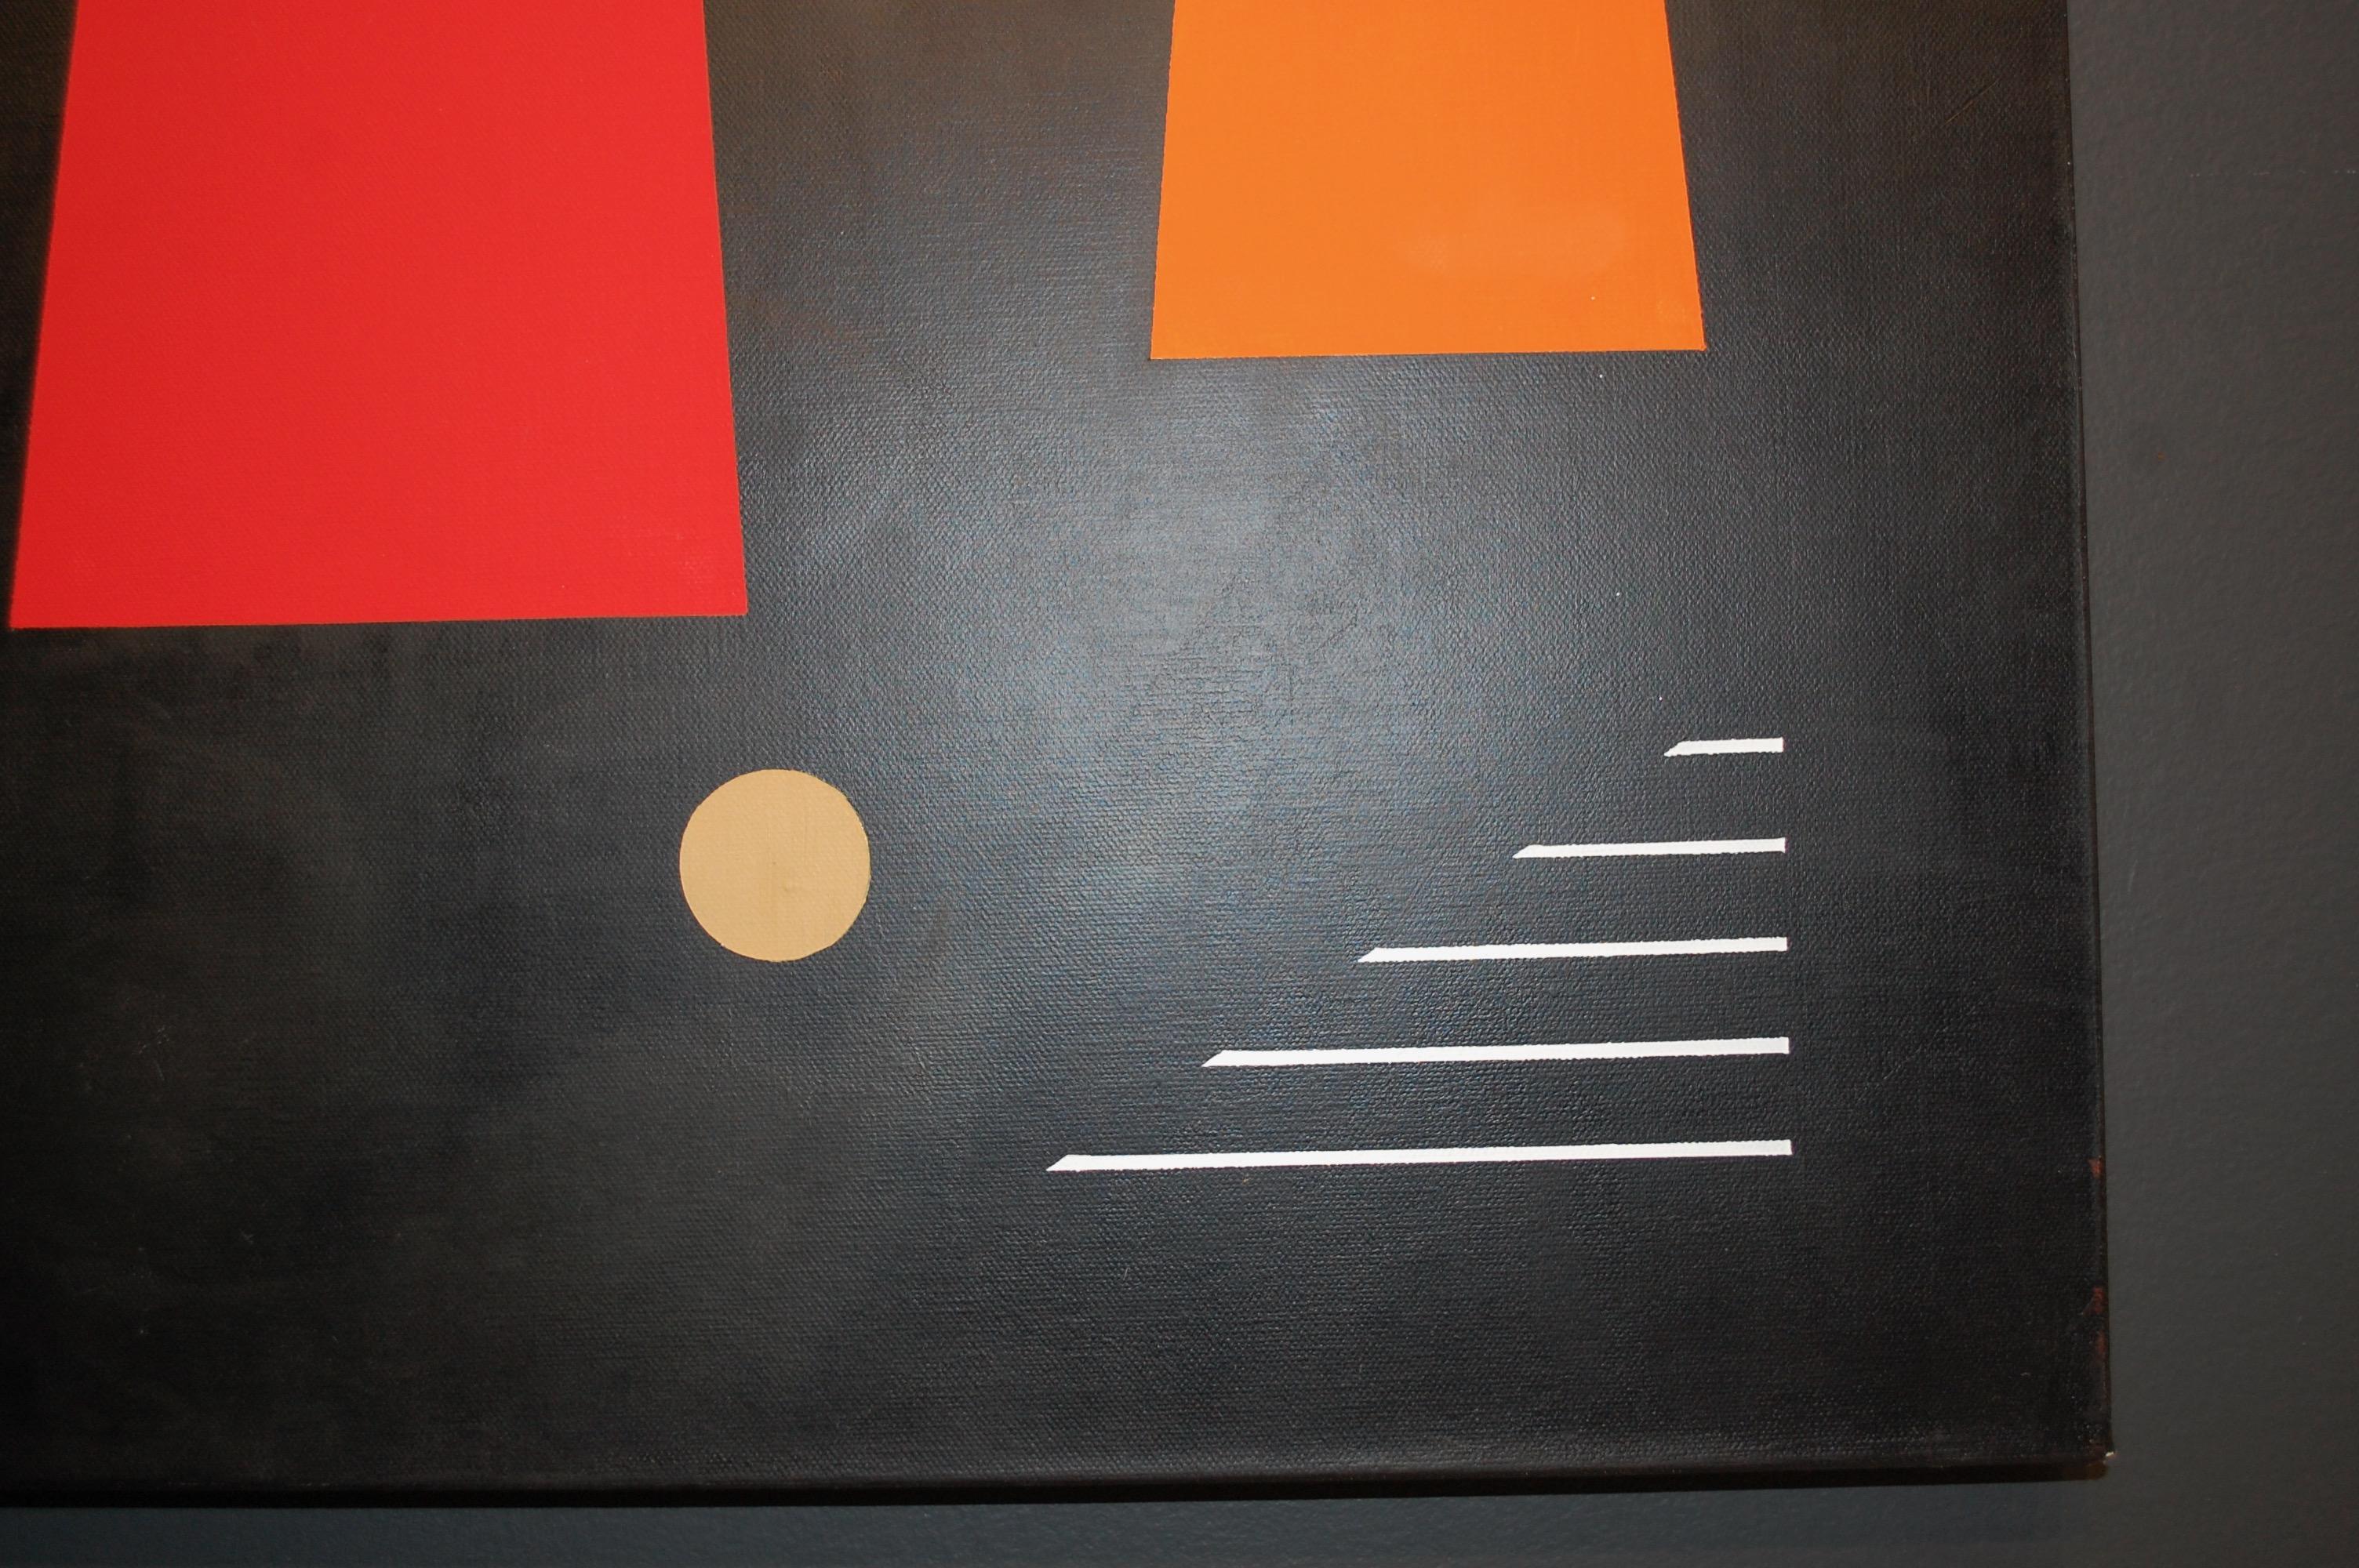 Trio On Black - Peinture à l'huile abstraite géométrique
Signée par l'artiste au verso, huile sur toile 48x24
Jaro est né en 1934 à Prague, en République tchèque. Depuis son enfance, c'est le cours d'art à l'école qu'il apprécie le plus. Presque